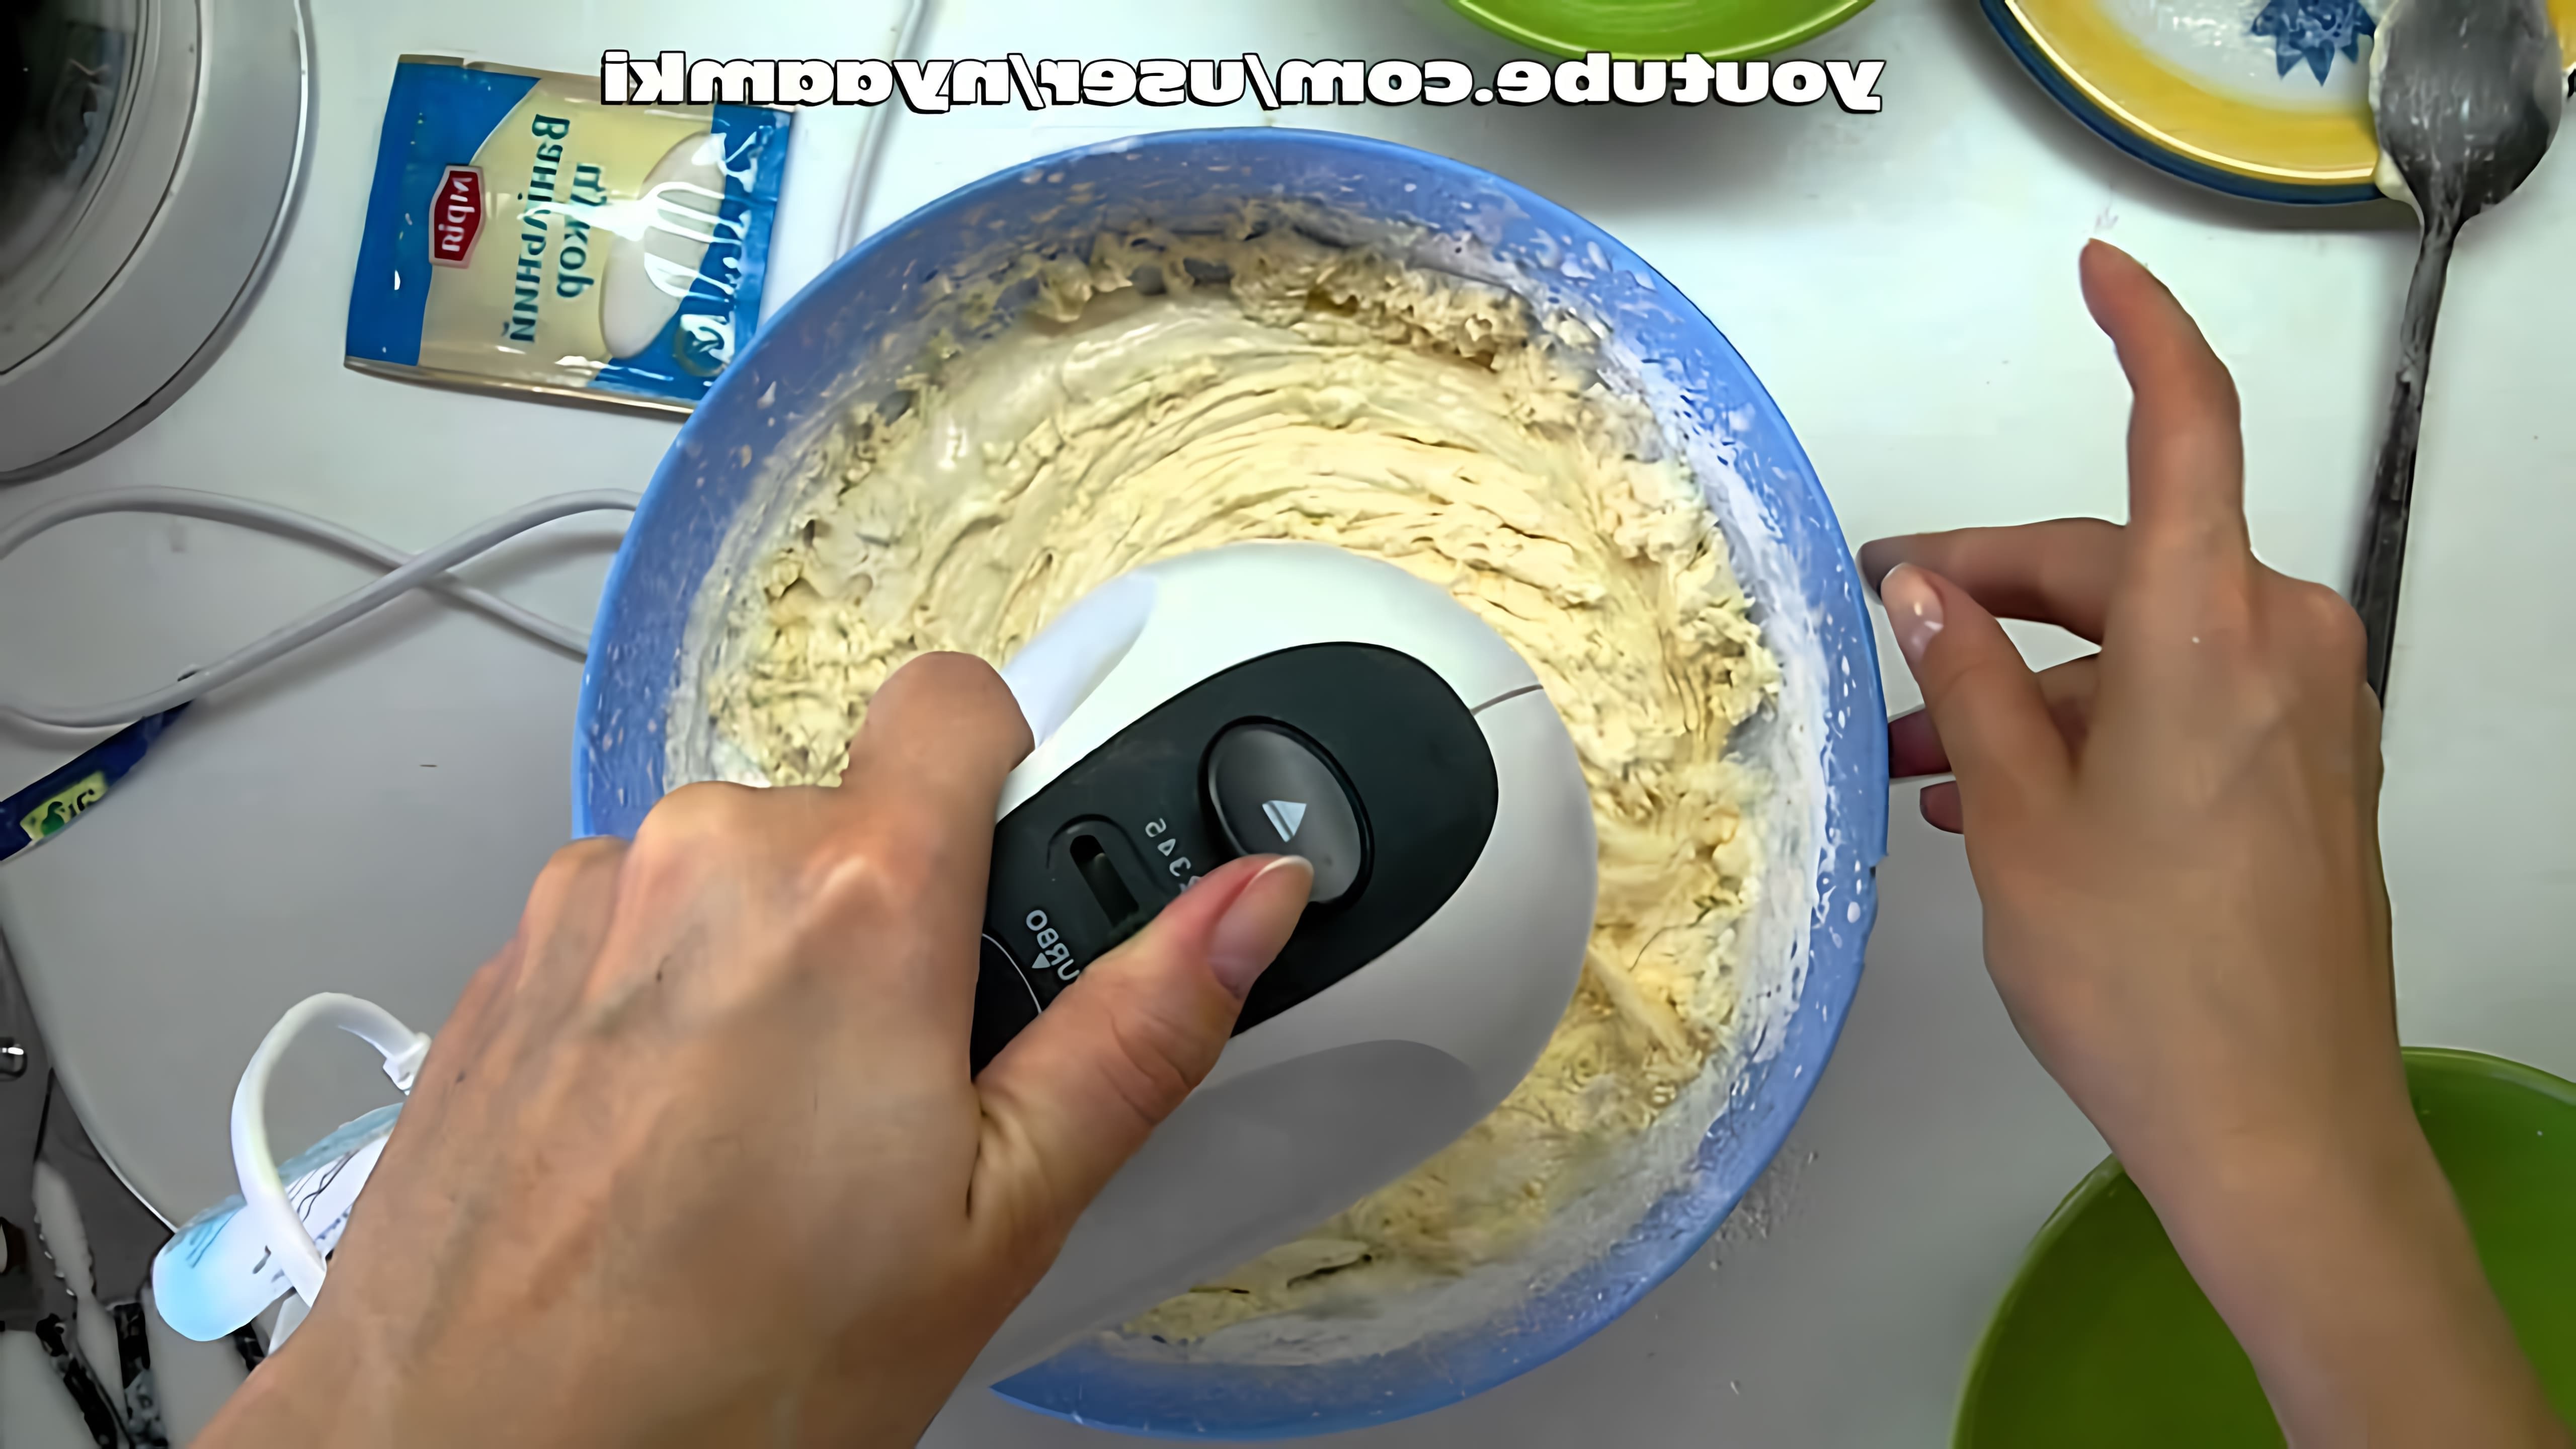 В этом видео демонстрируется рецепт приготовления пышного бисквита